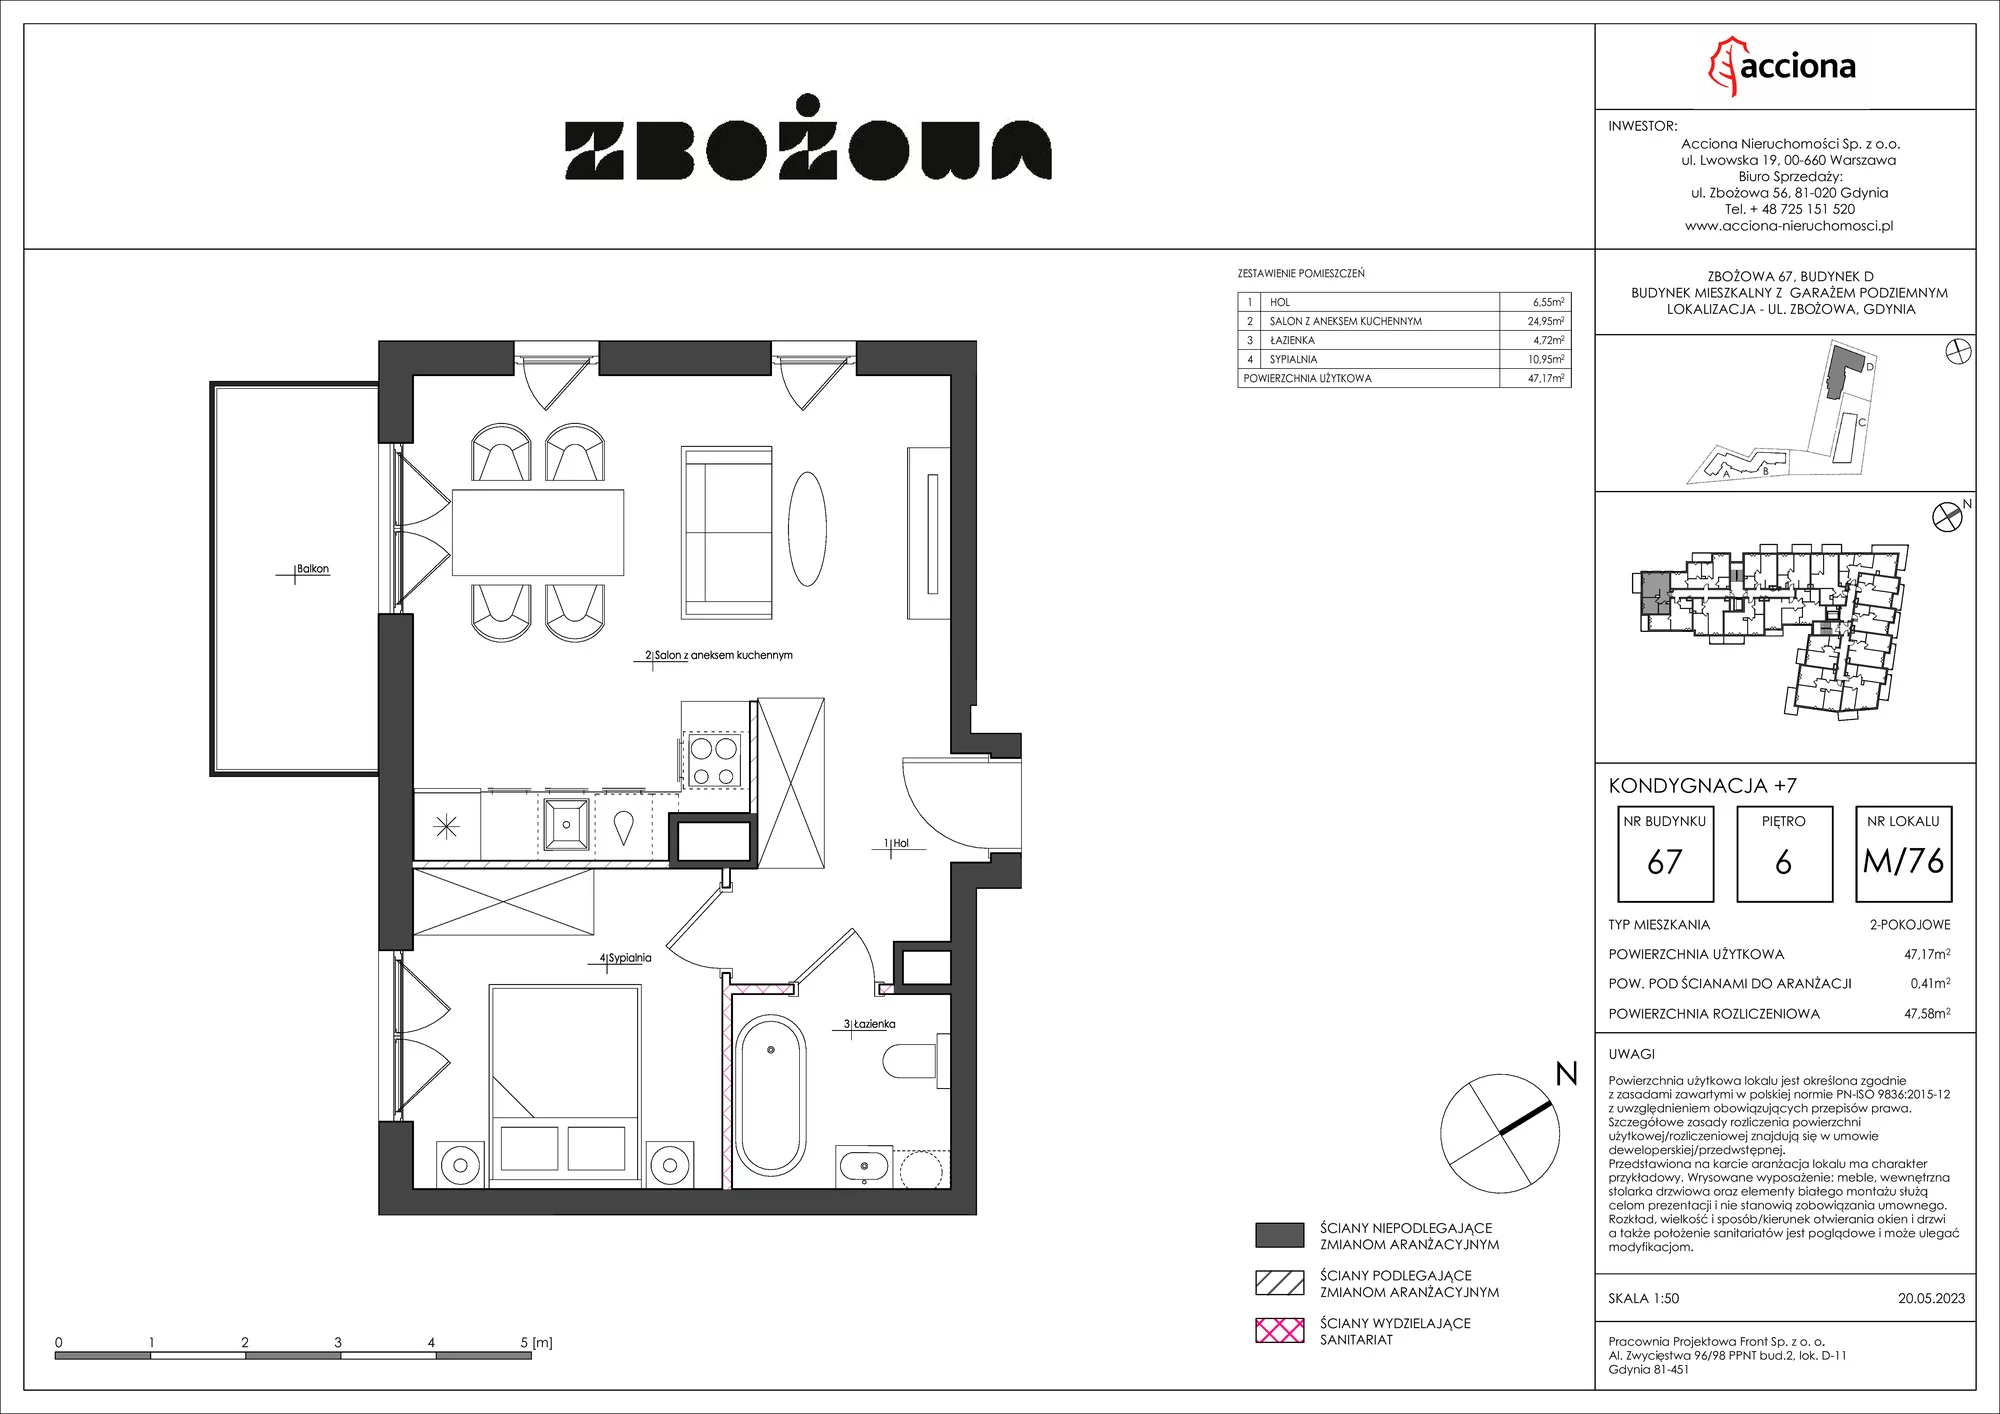 Mieszkanie 47,58 m², piętro 6, oferta nr 67.76, Zbożowa, Gdynia, Cisowa, ul. Zbożowa